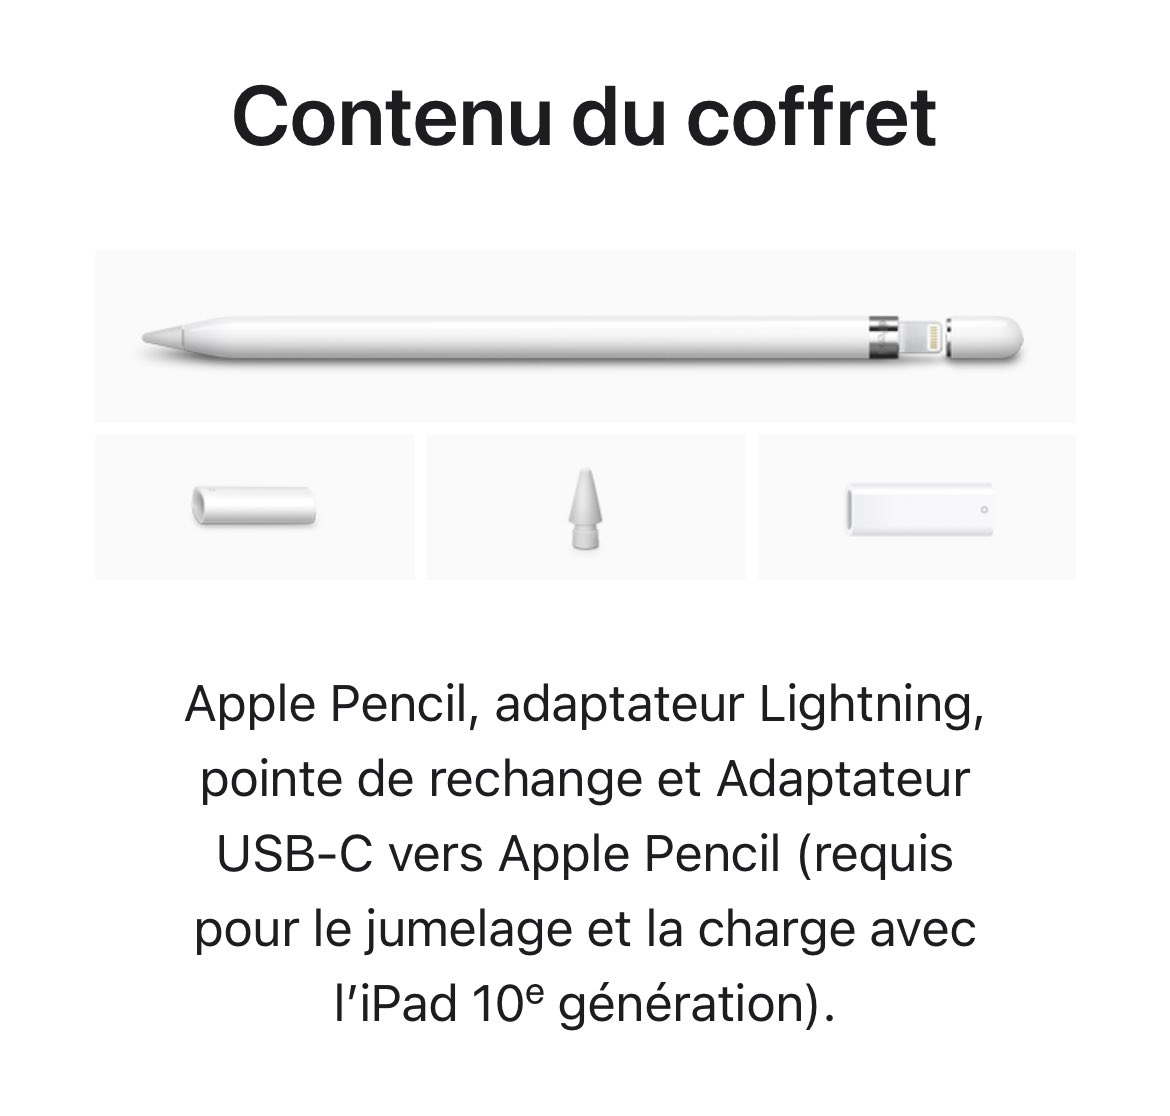 Guillaume Vendé on X: L'iPad 10e génération annoncé hier est USB-C mais  n'est pas compatible avec le Pencil 2, seulement avec le Pencil 1 qui se  recharge… en Lightning. Je ne m'en